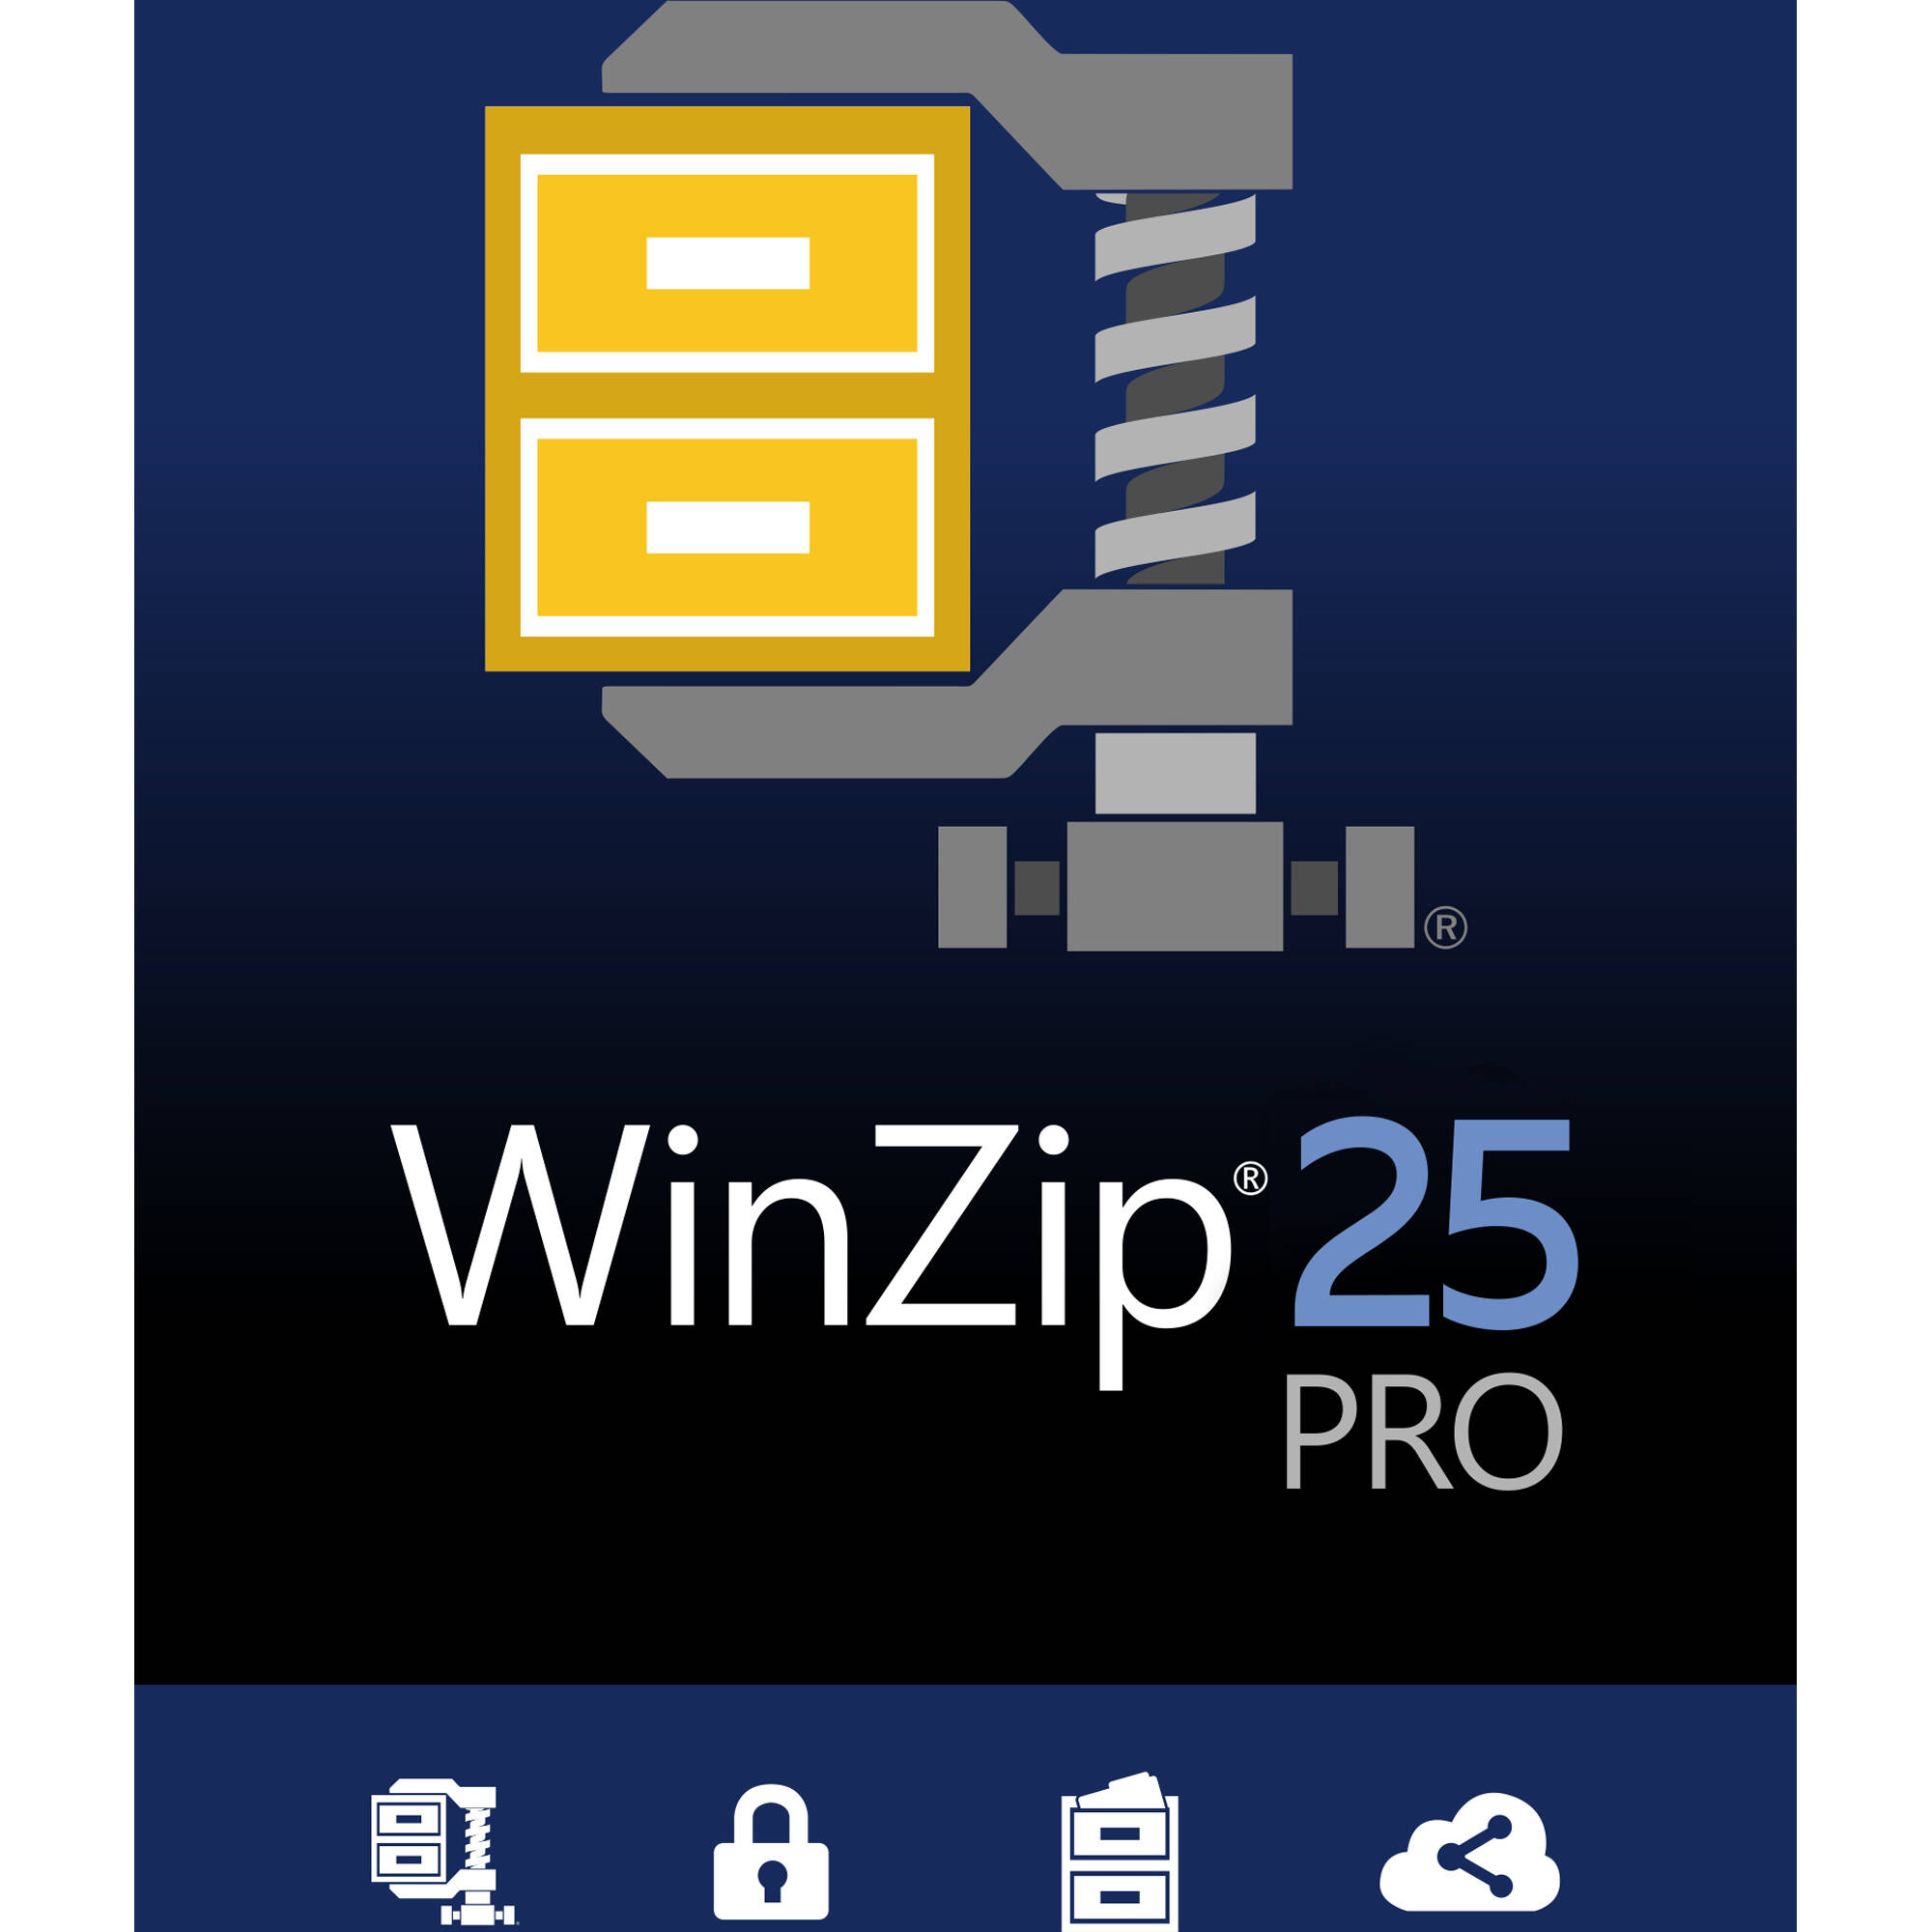 winzip 27 pro download